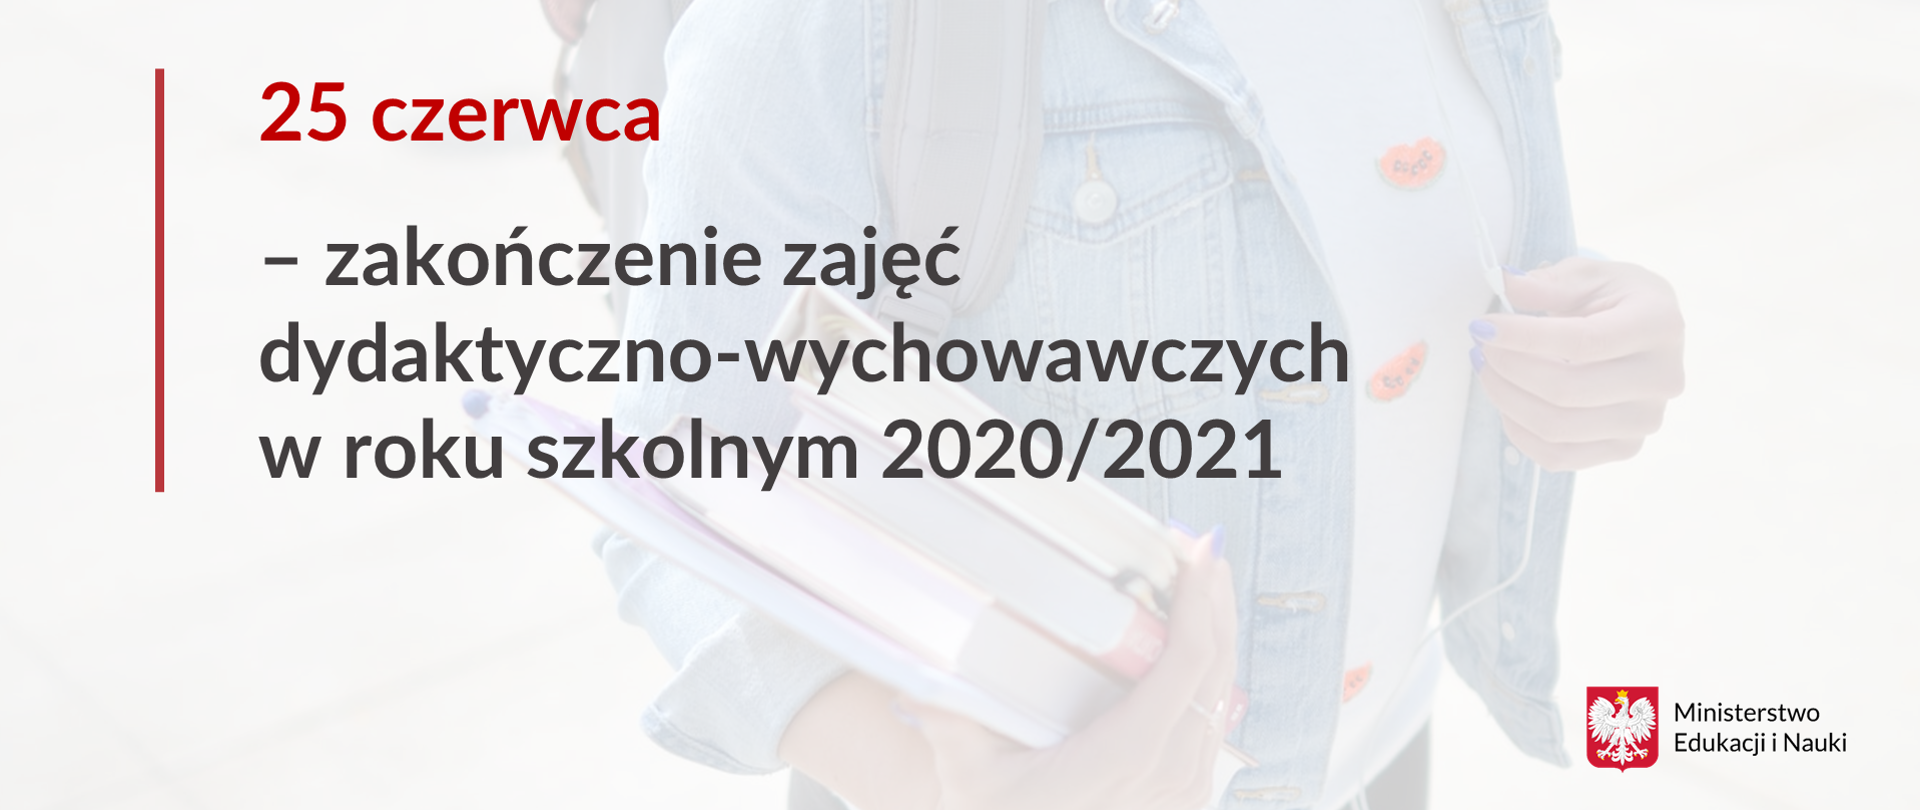 25 czerwca - zakończenie zajęć dydaktyczno-wychowawczych w roku szkolnych 2020/2021